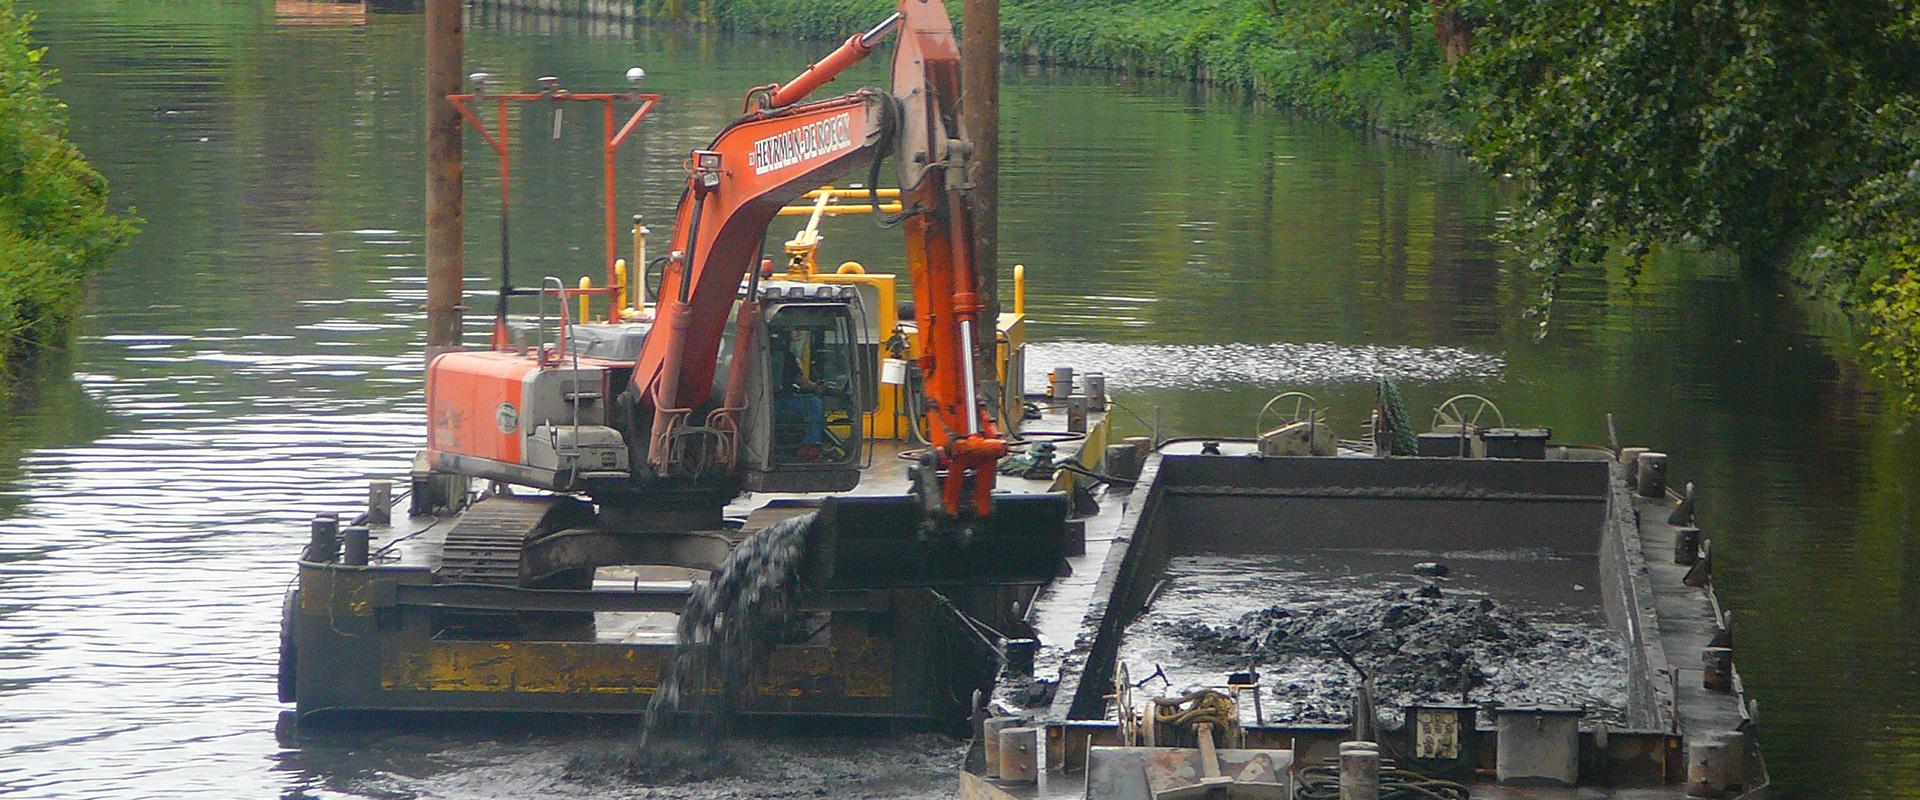 Dragage mécanique de sédiments pollués sur le canal de Lens, Pas-de-Calais